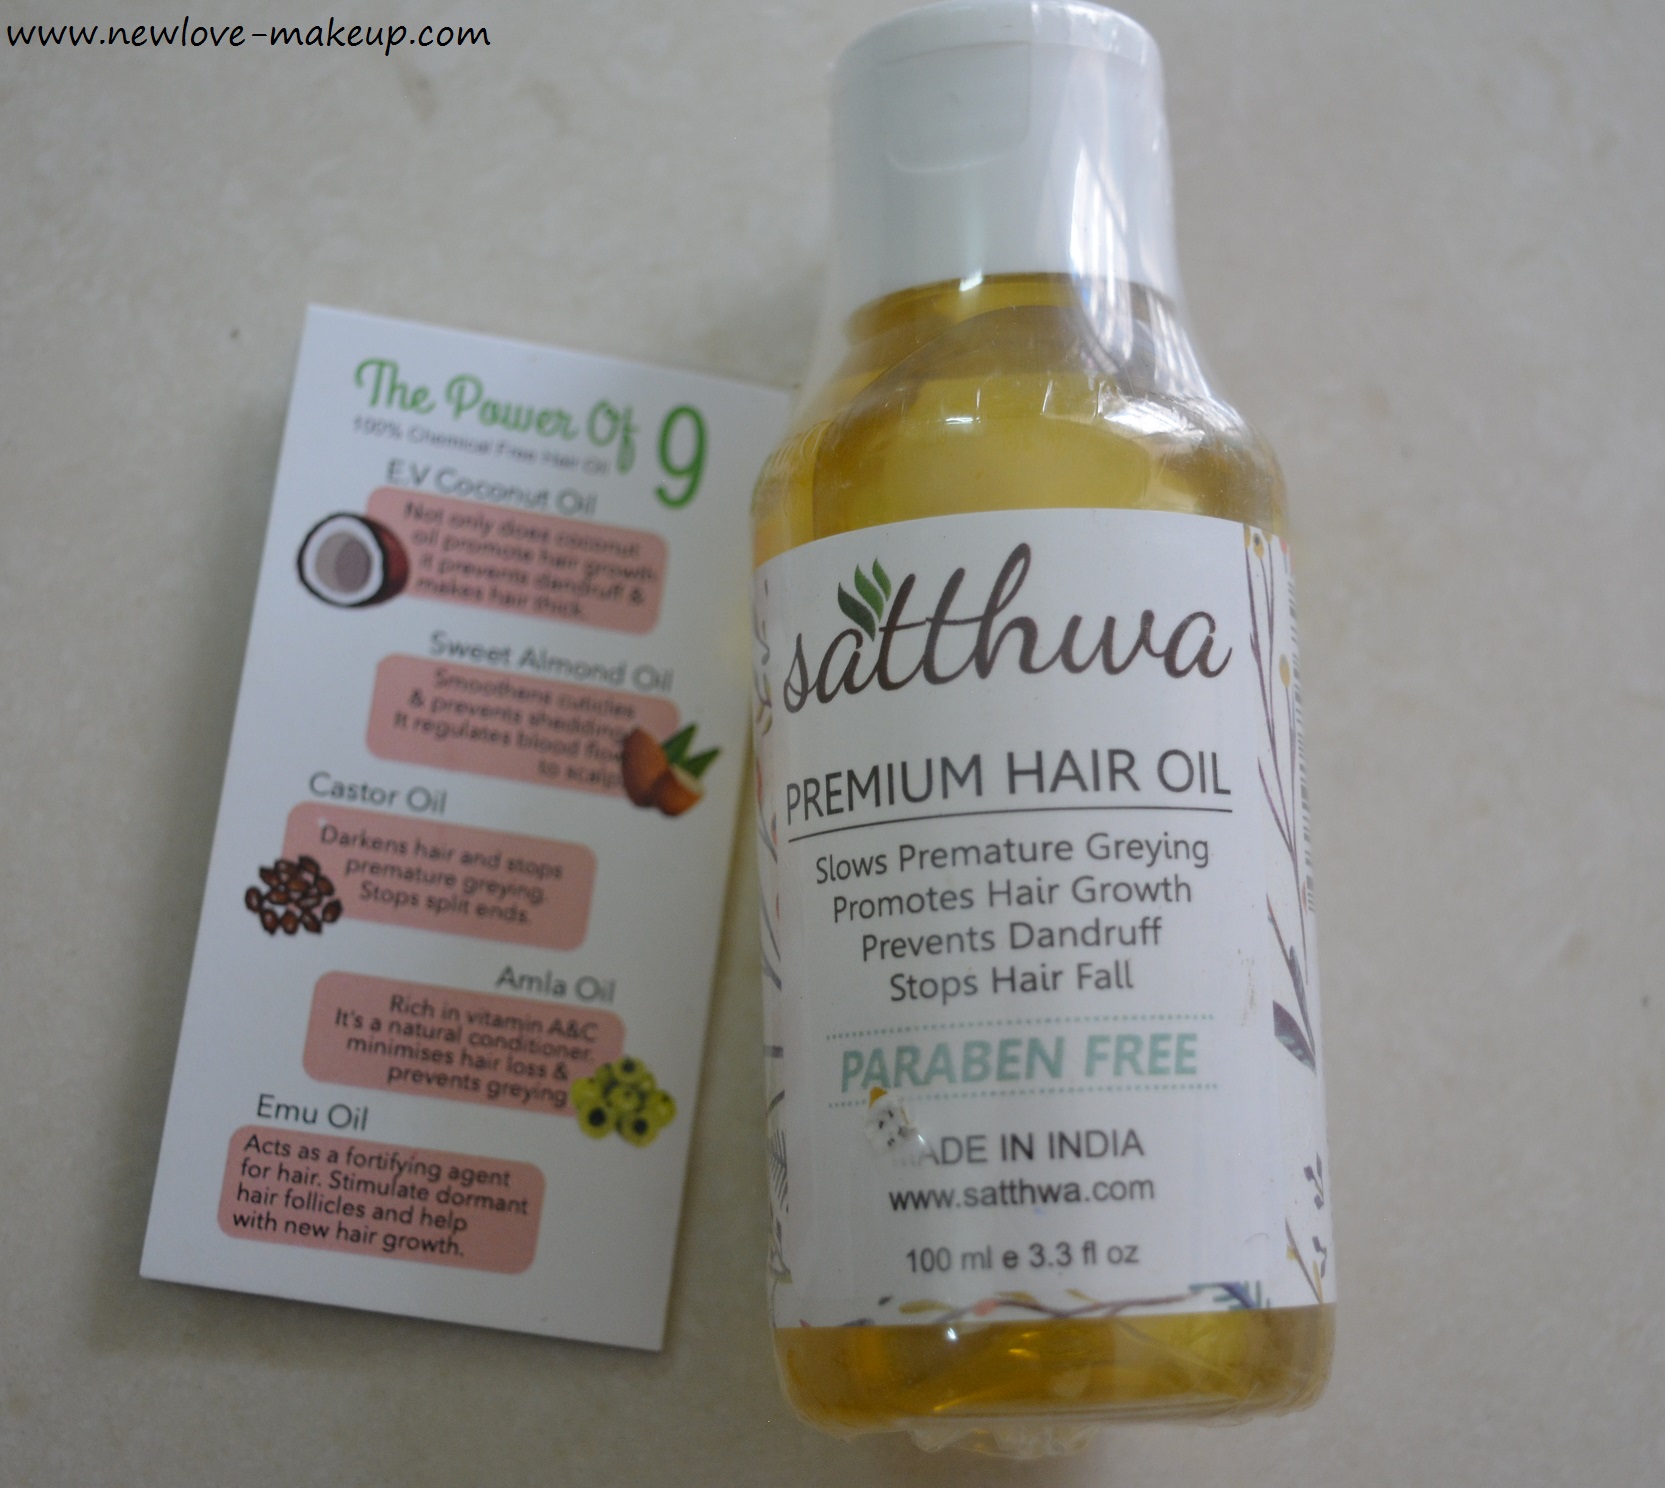 Satthwa Premium Hair Oil for Hair Fall Control & Hair Growth Review